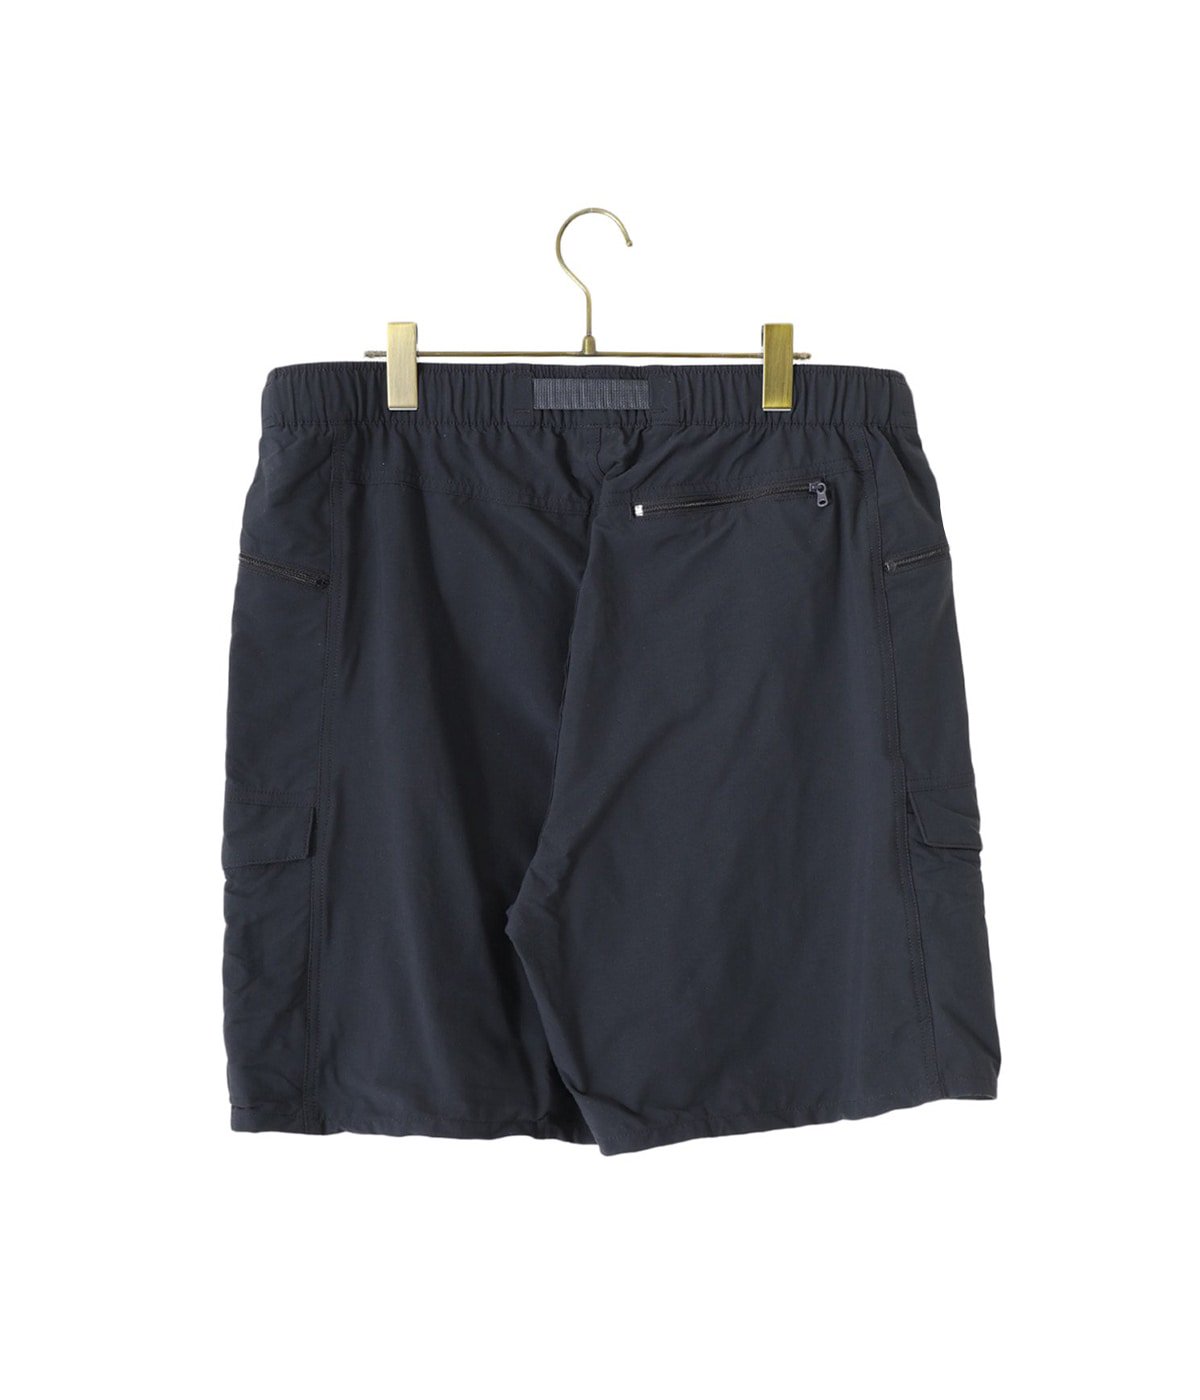 オンライン通販 値段 - パタゴニア Outdoor Everyday Shorts 7in L 